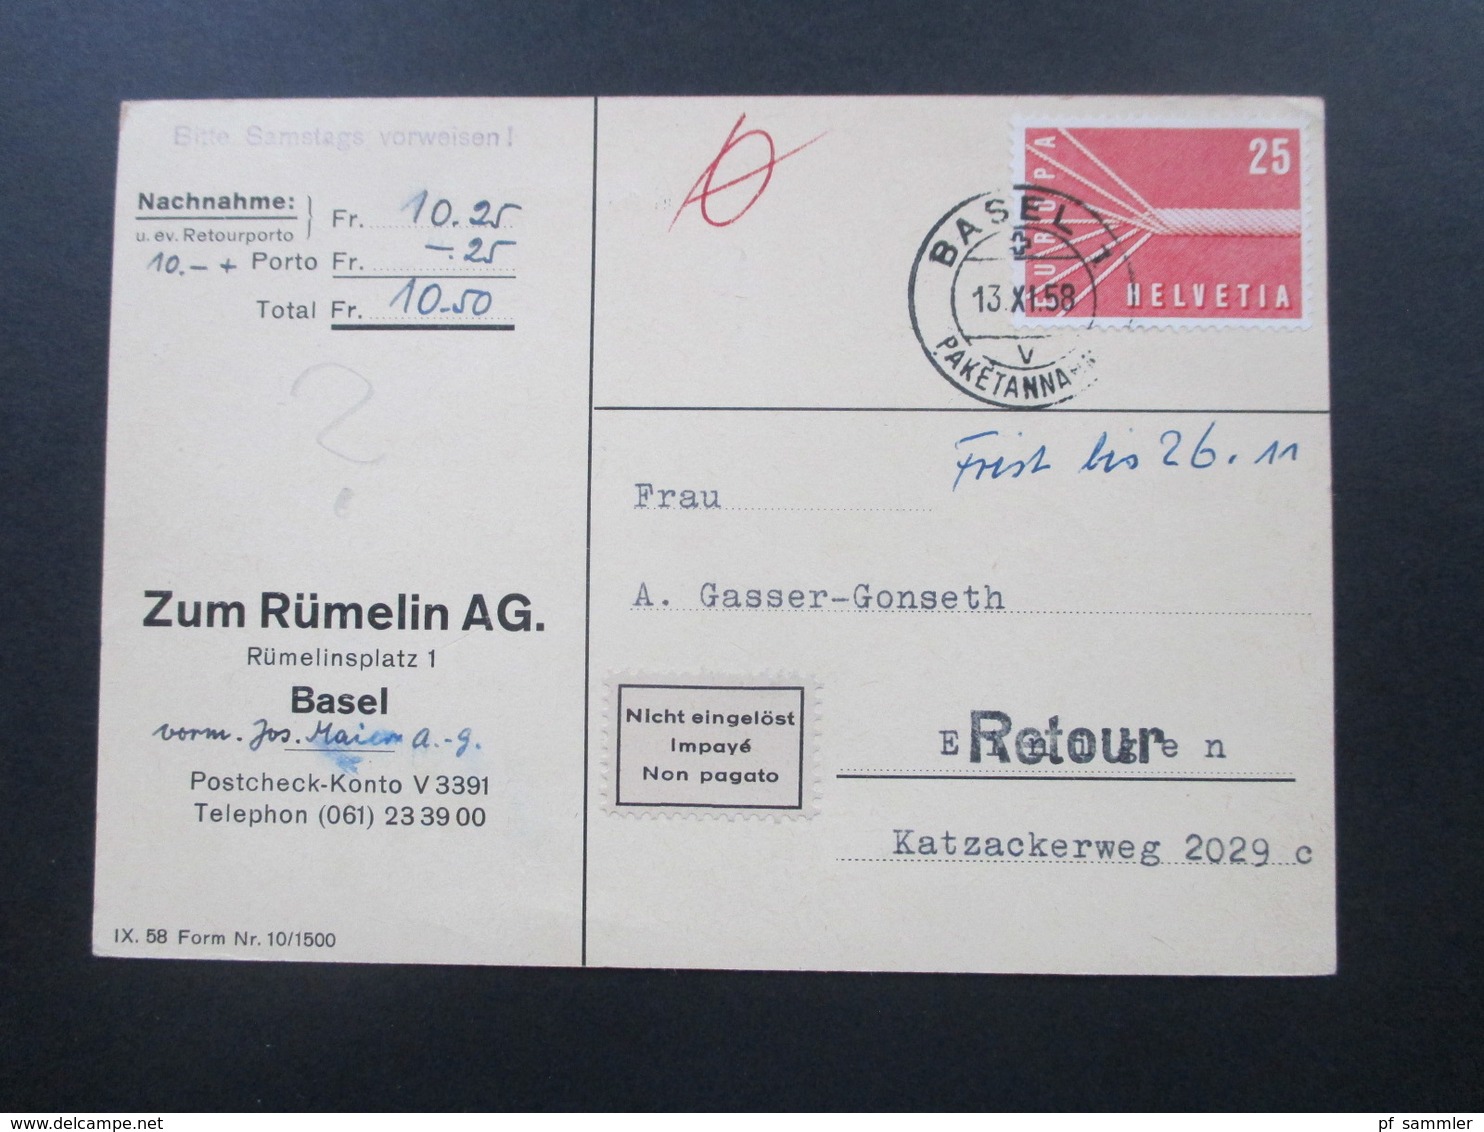 Schweiz 1958 2x Nr. 646 EF auf Nachnahmekarten Retour / Nicht eingelöst / impaye / Non pagato